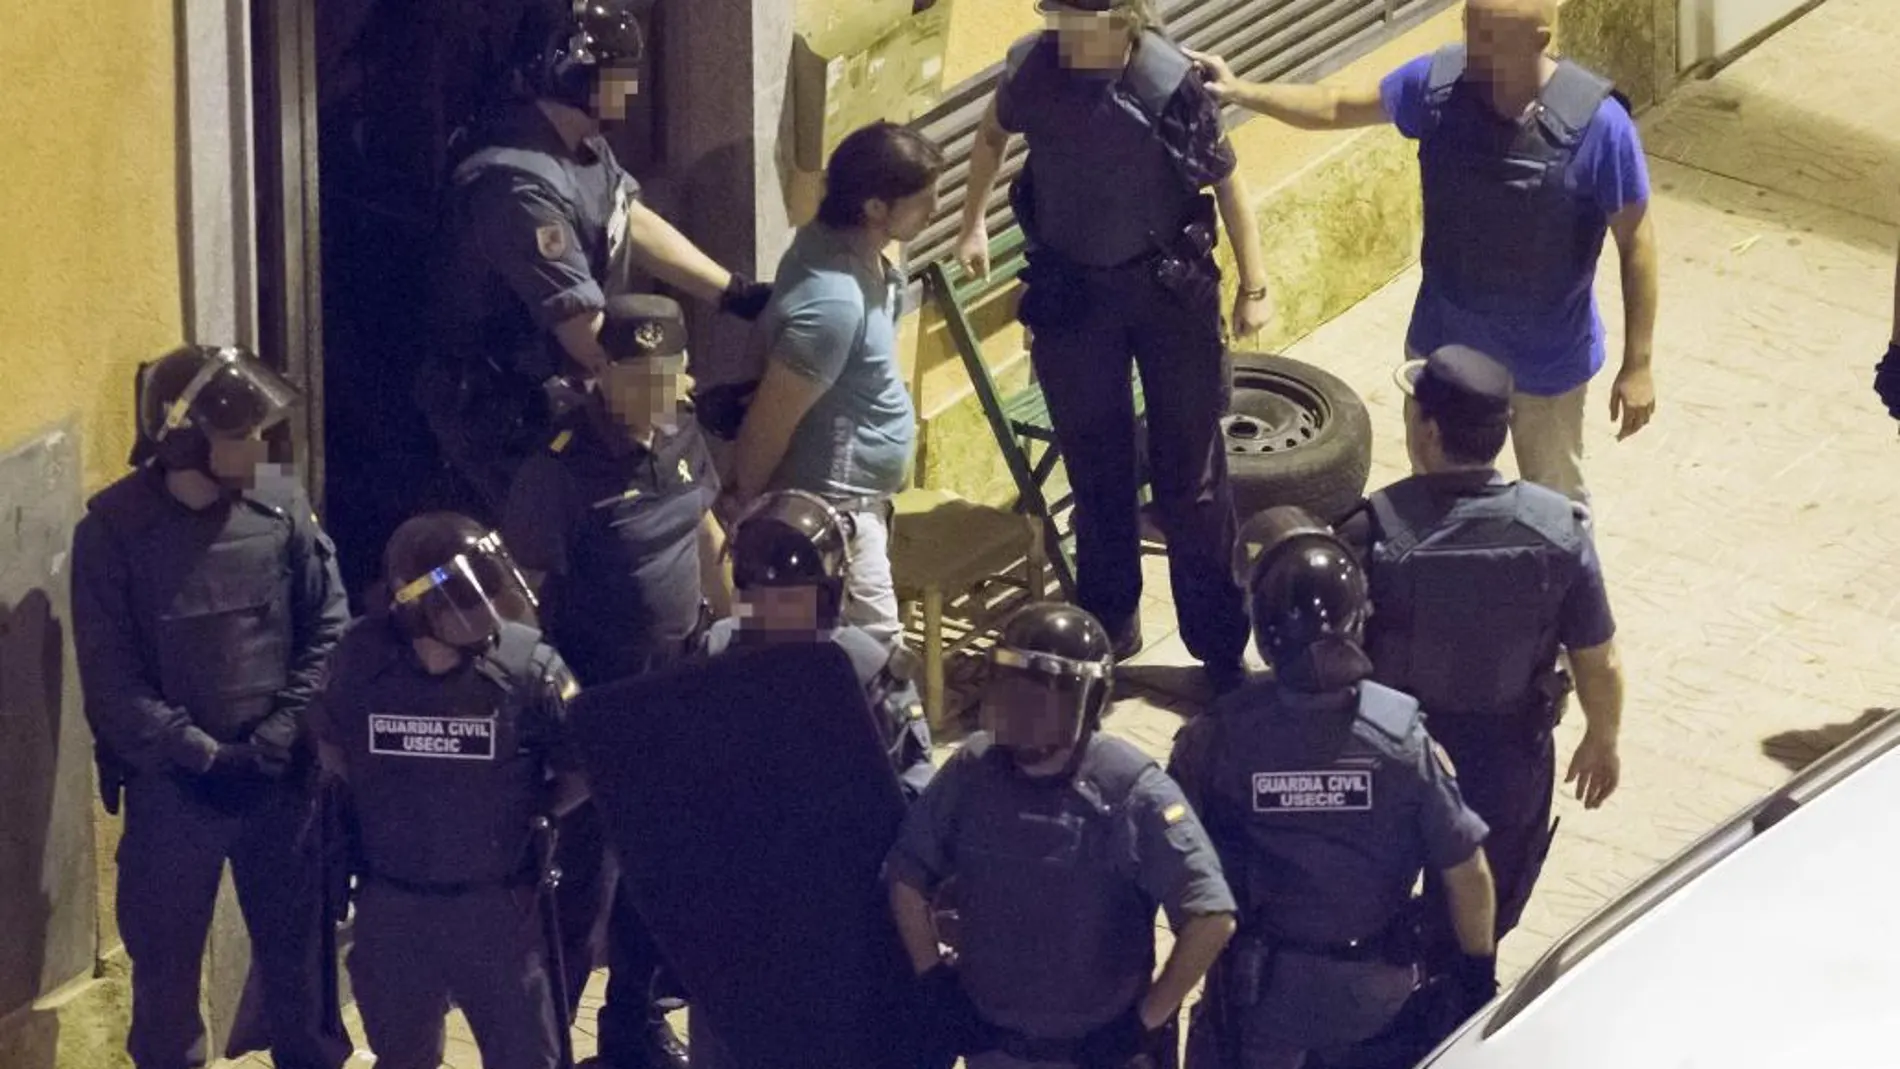 Miembros de la guardia civil durante la detención de uno de los hombres presuntamente implicados en la riña mortal ocurrida hoy en Mazarrón